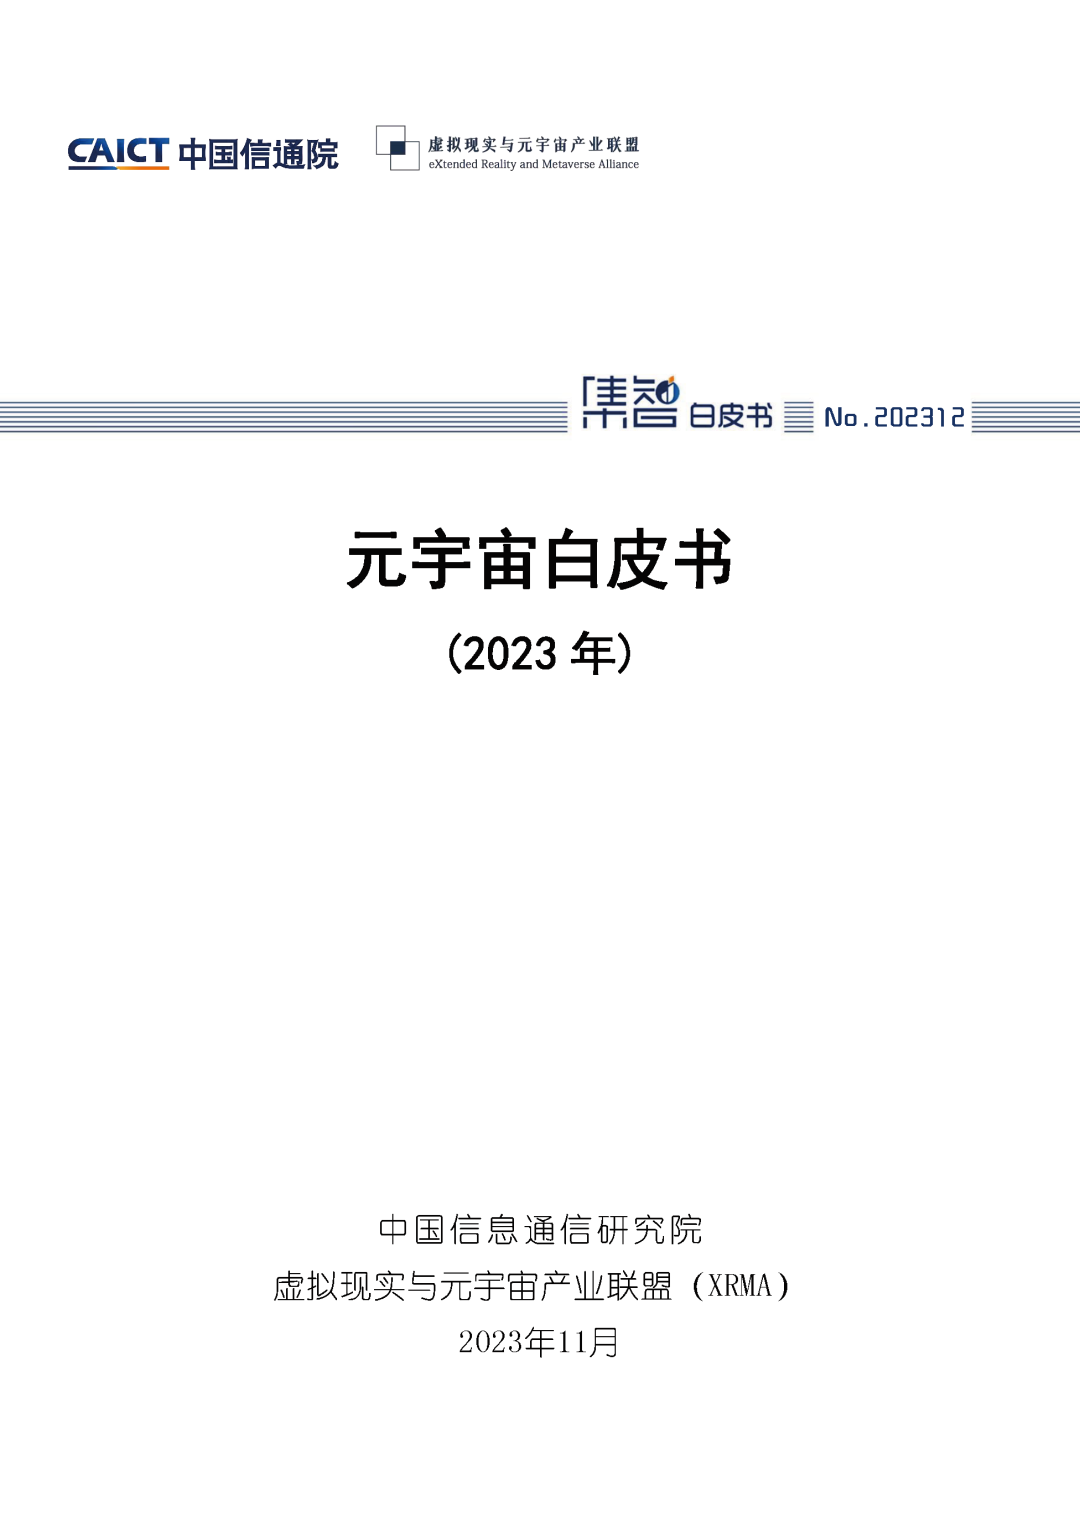 中国信通院联合虚拟现实与元宇宙产业联盟（XRMA）发布《元宇宙白皮书（2023年）》